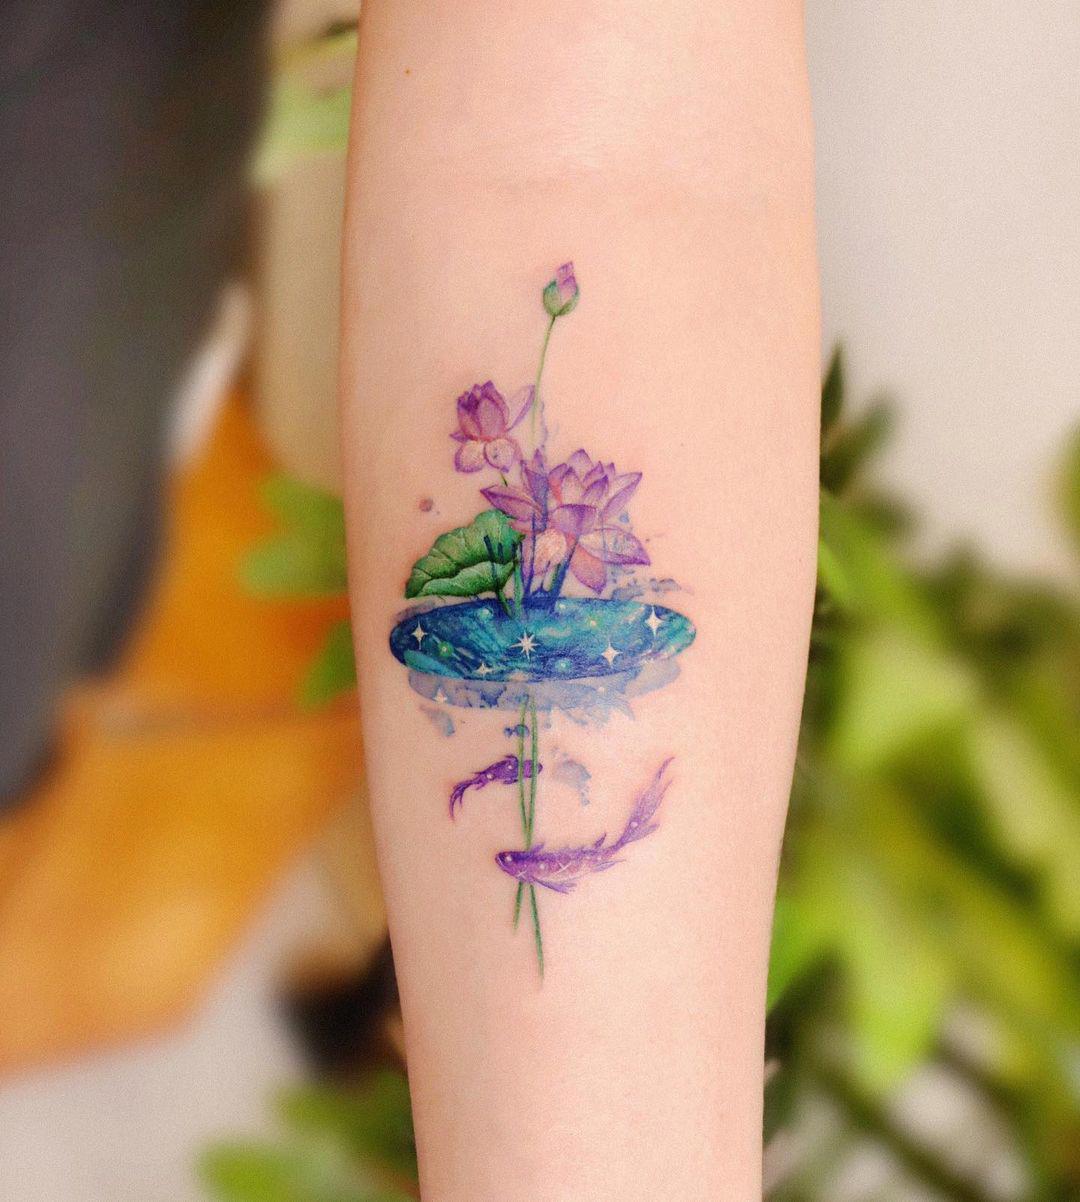 Un tattoo de flor de loto que parece una acuarela